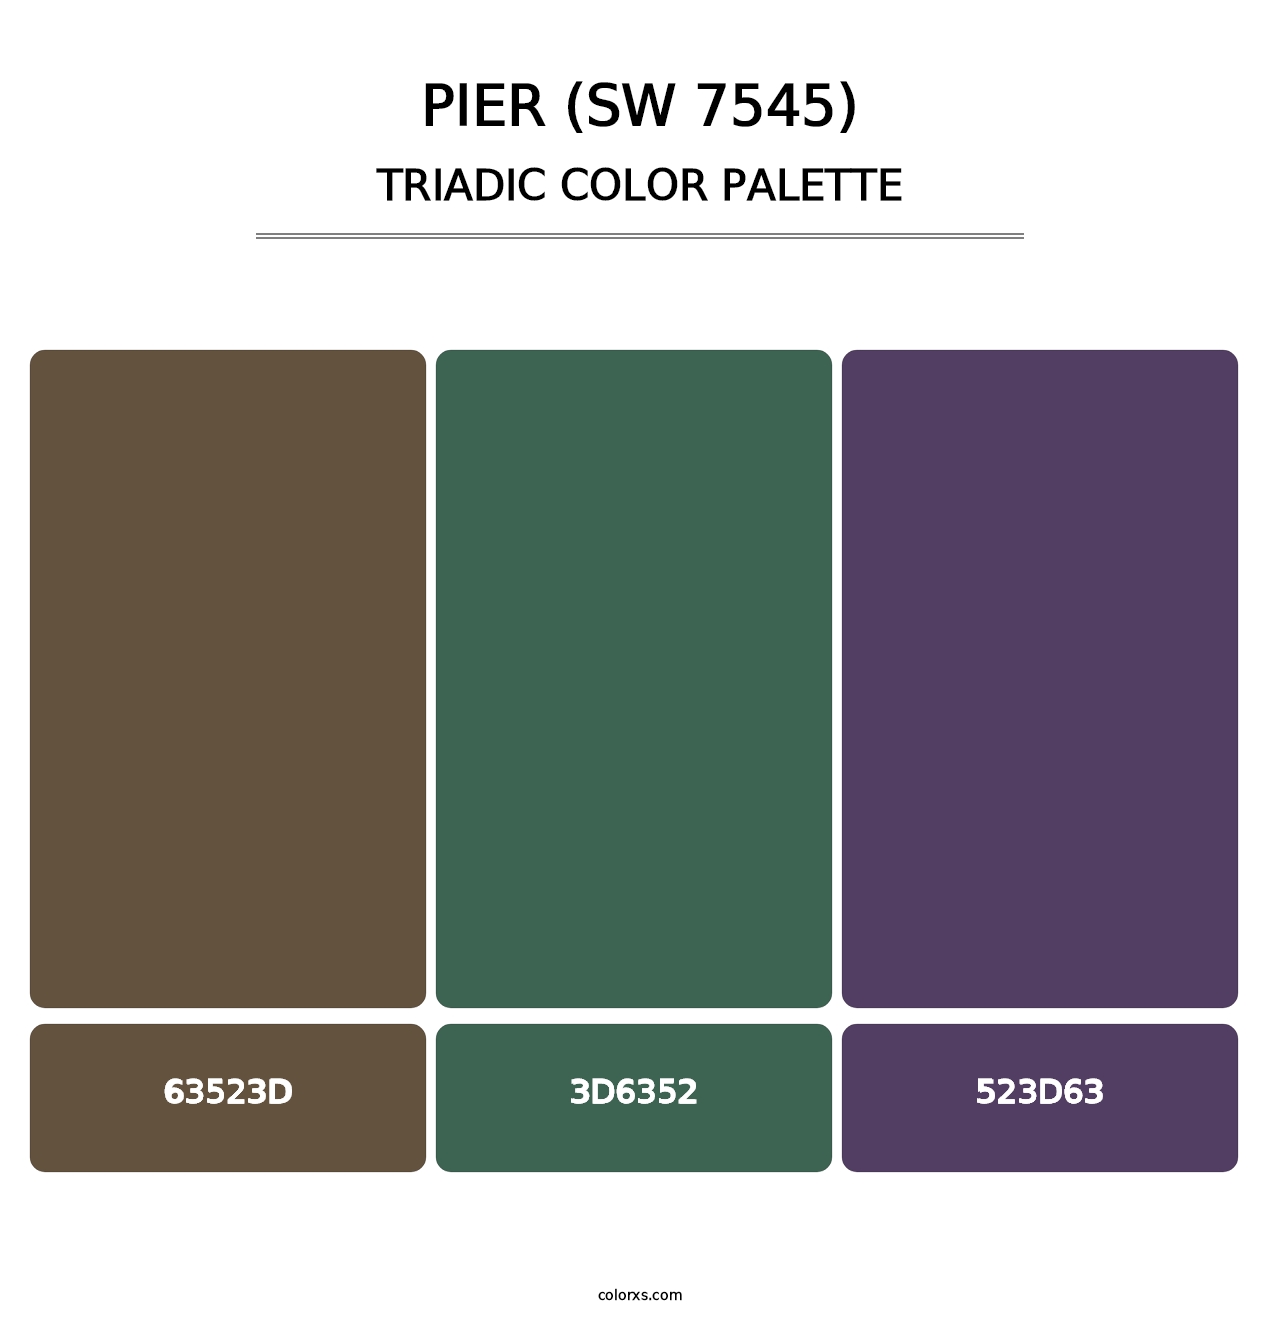 Pier (SW 7545) - Triadic Color Palette